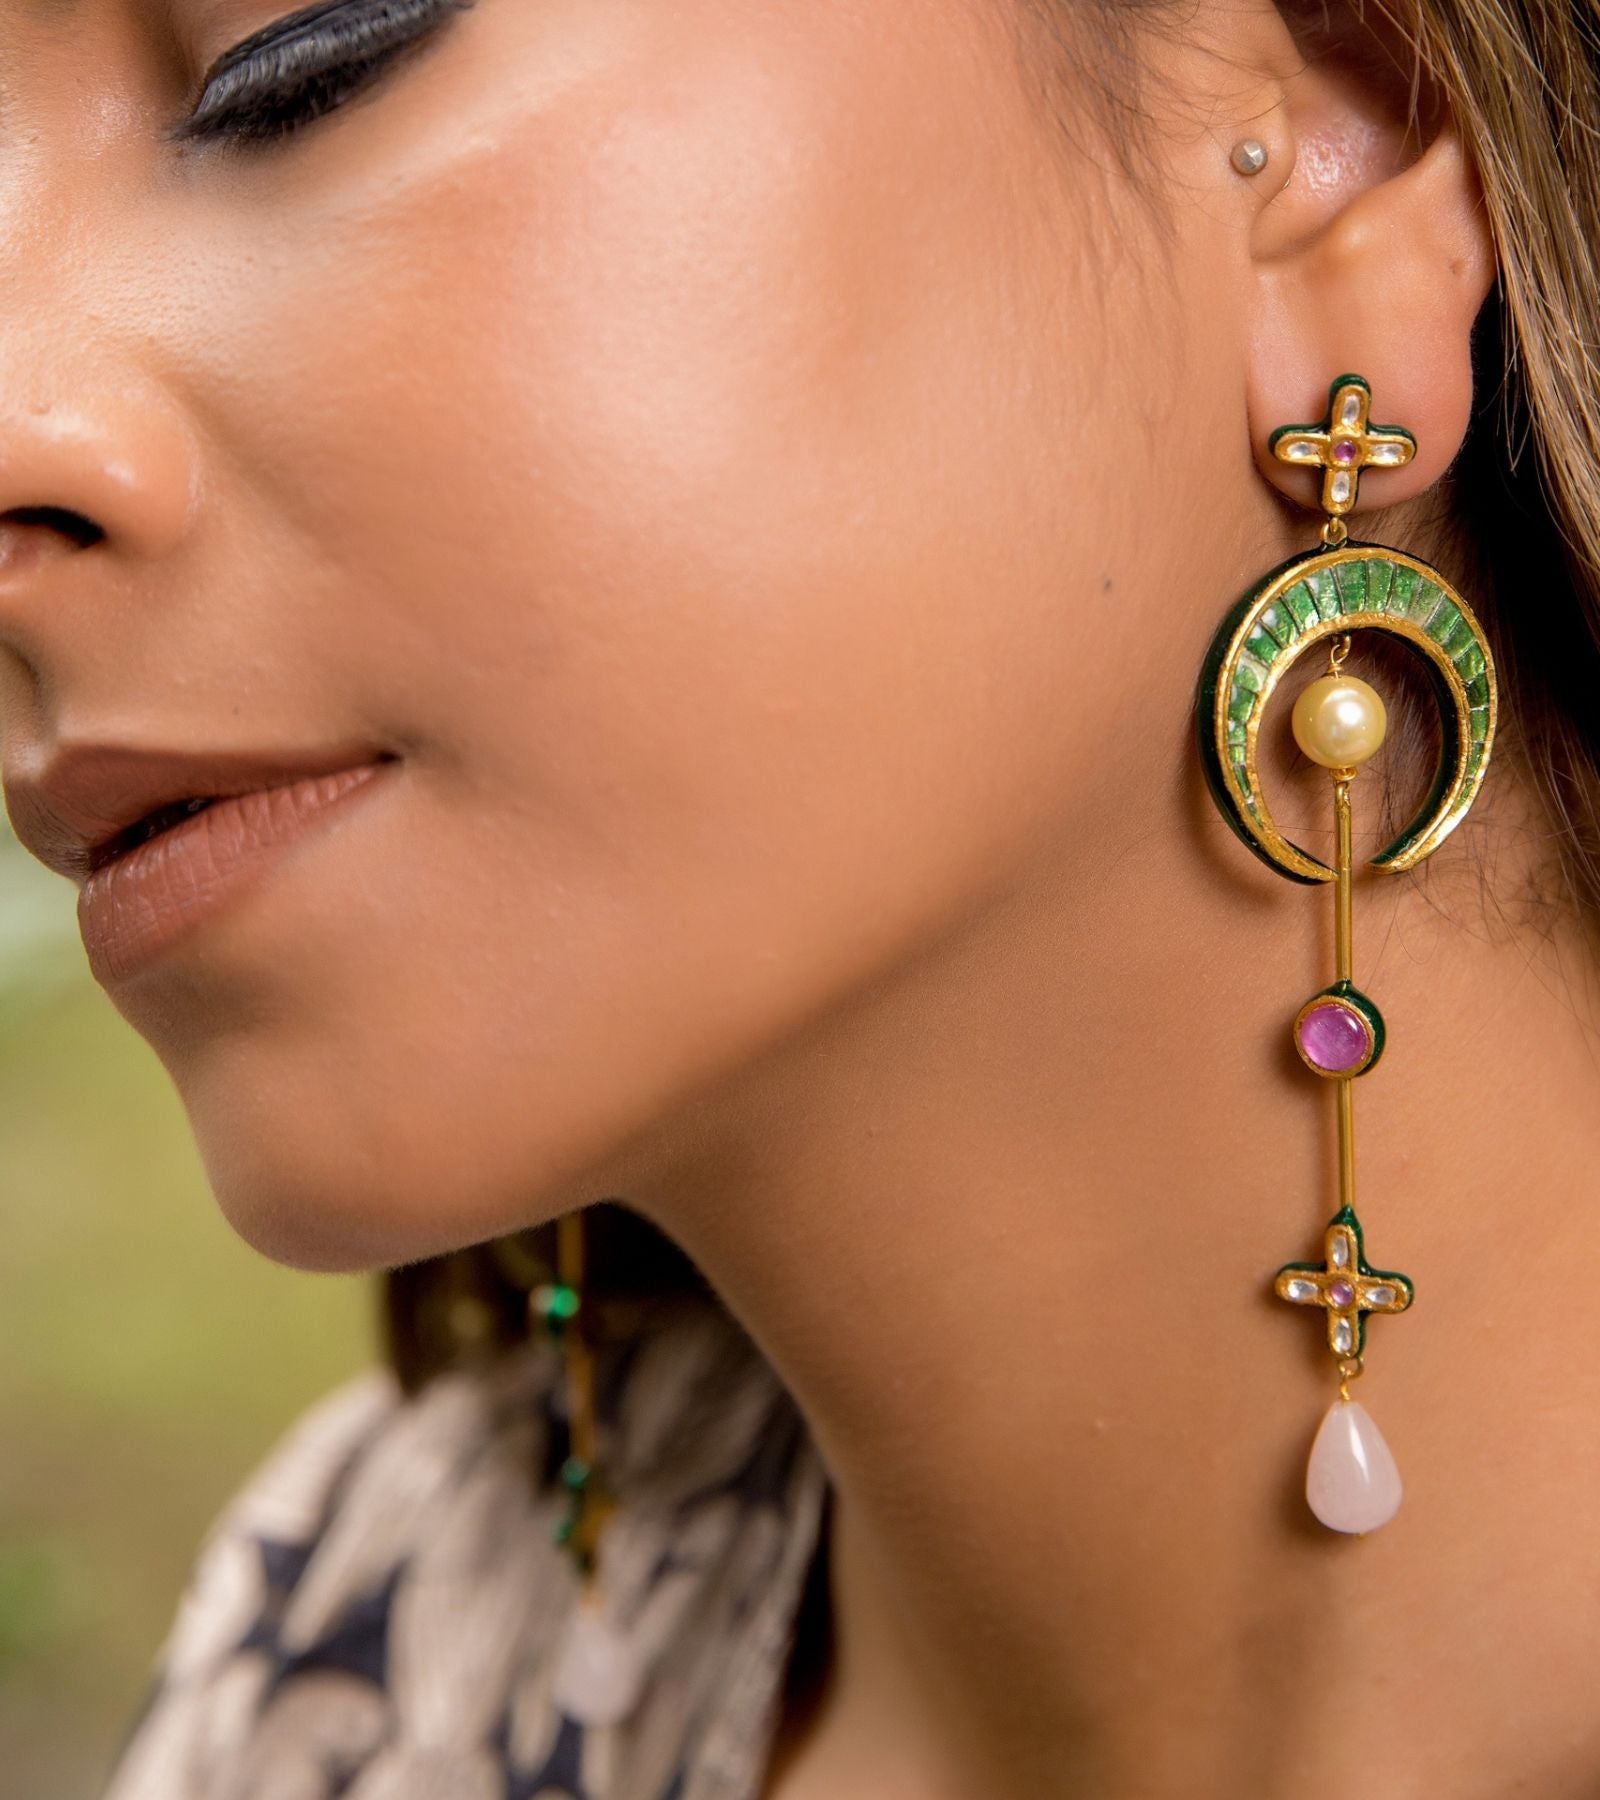 Festive Glam Earrings by UNCUT Jewelry